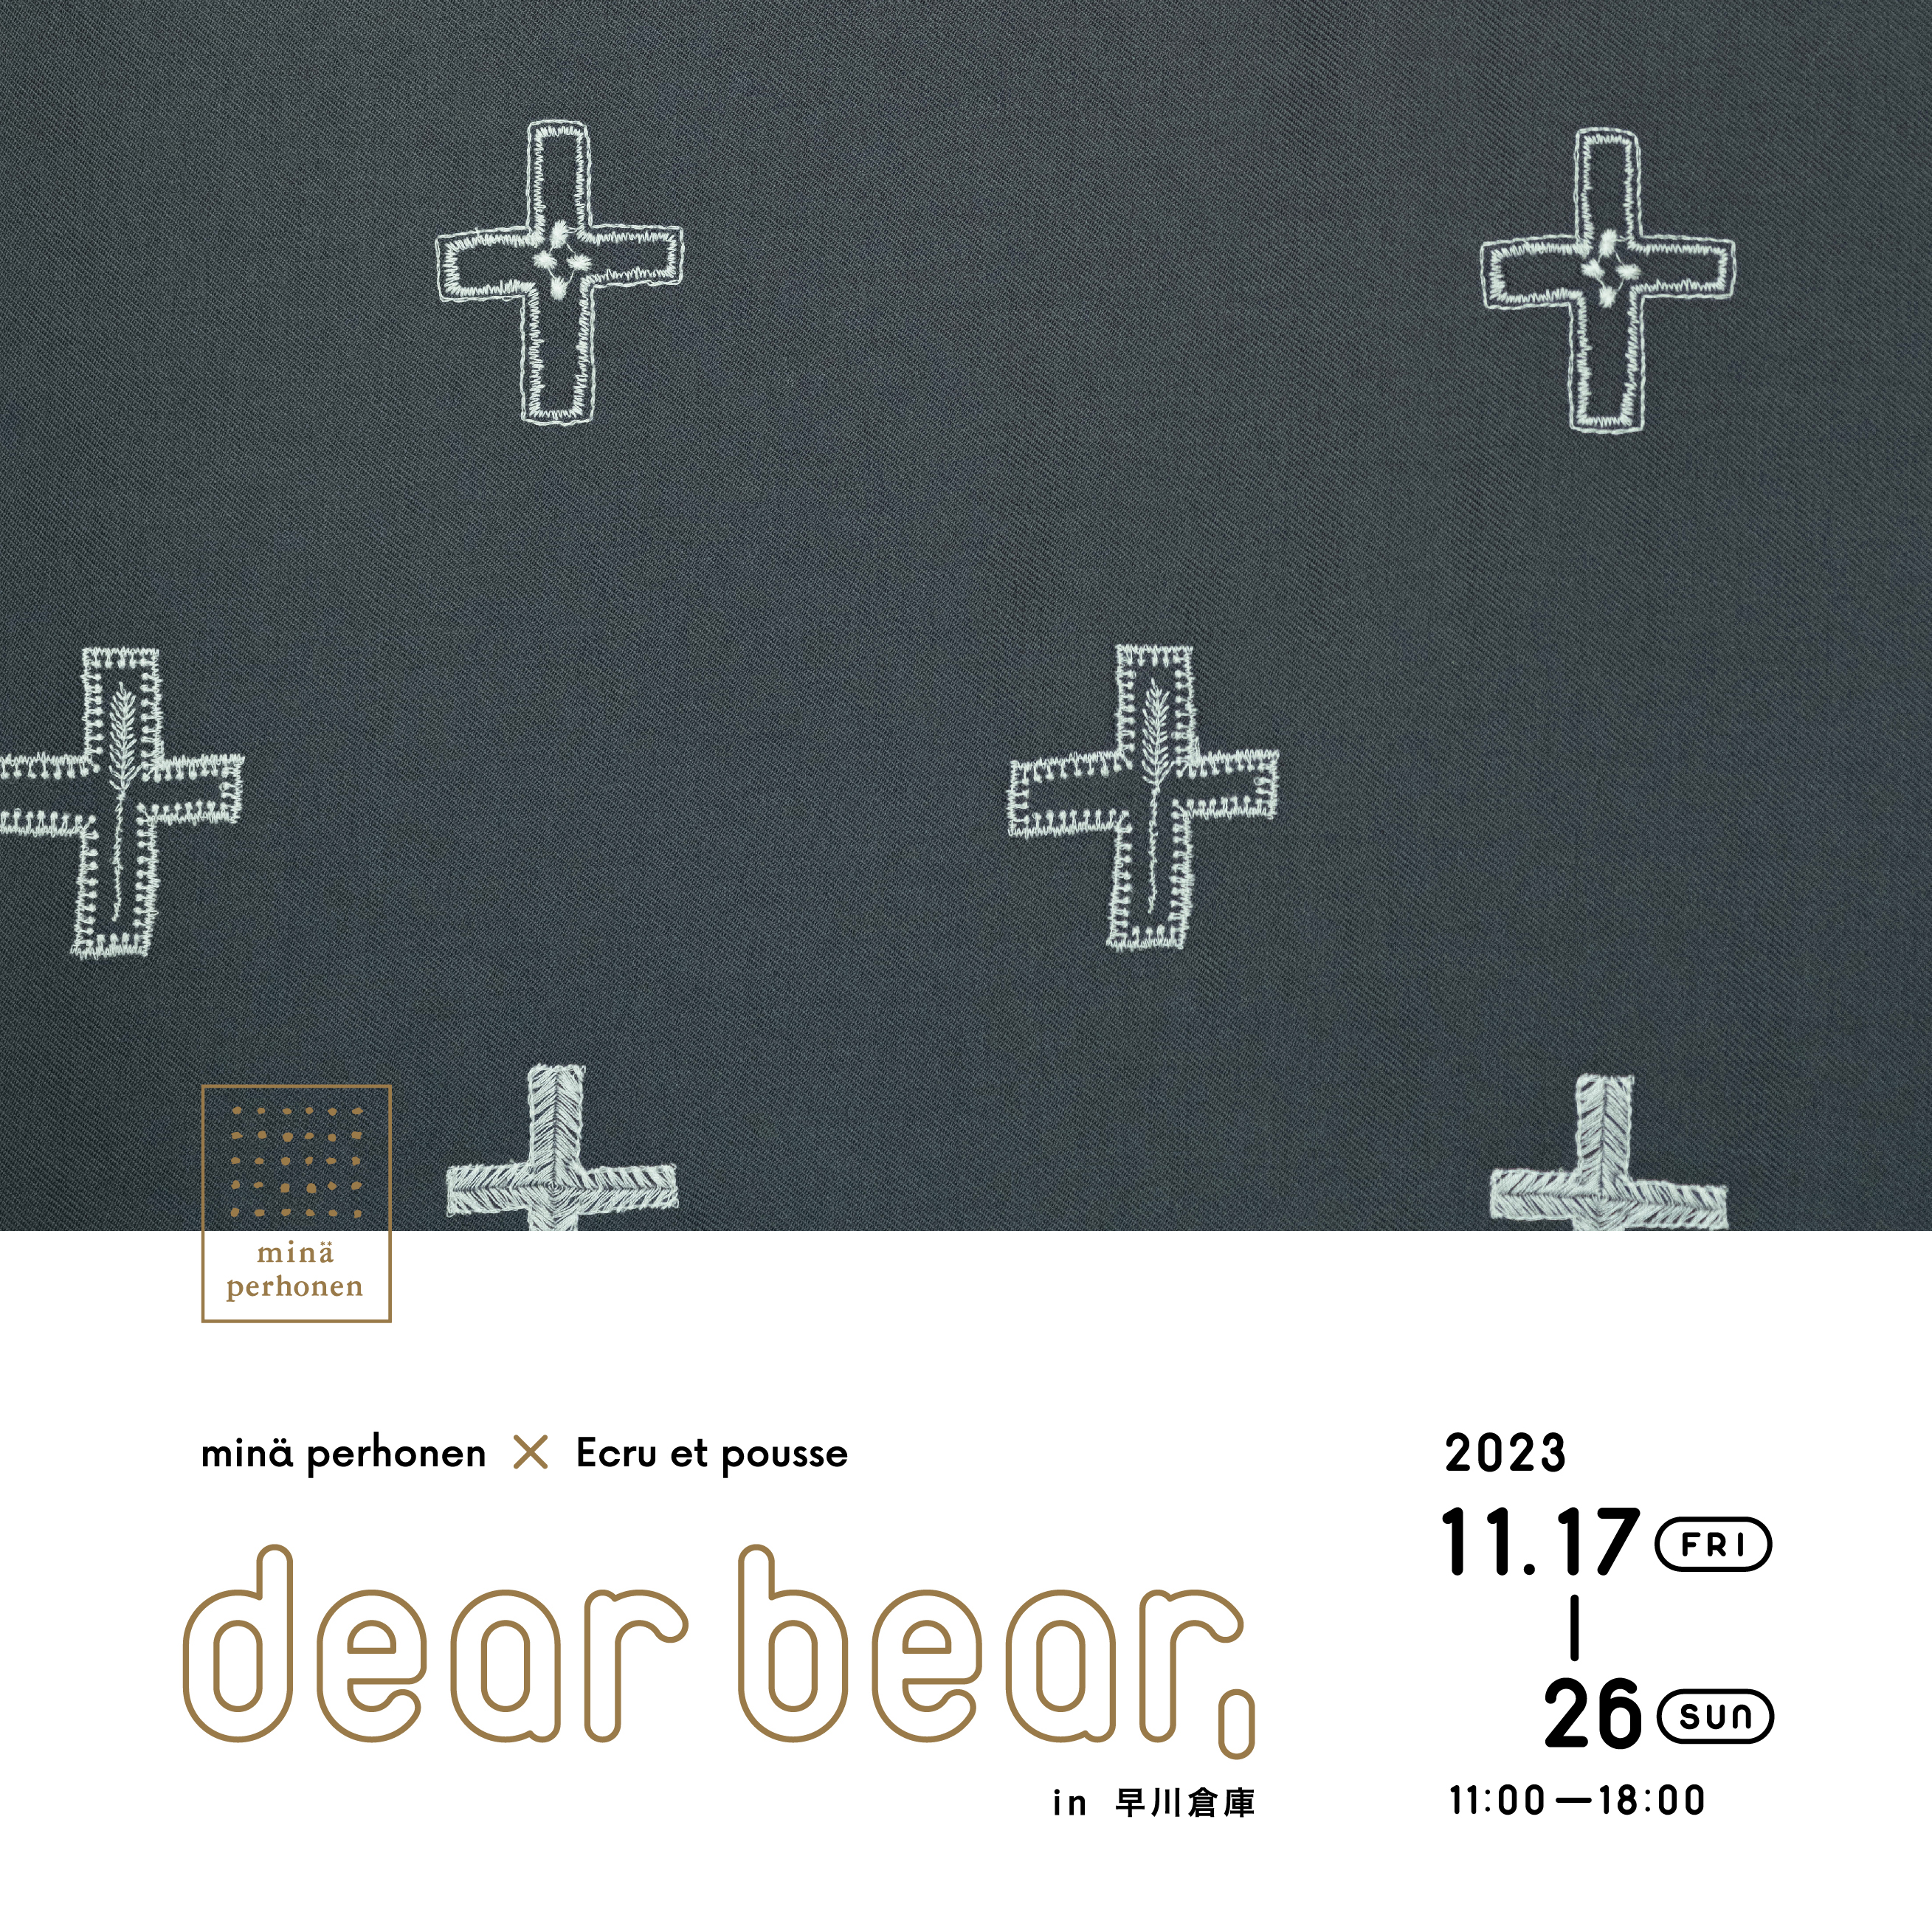 熊本・Ecru et pousseによるイベント「dear bear,」のお知らせ。11 